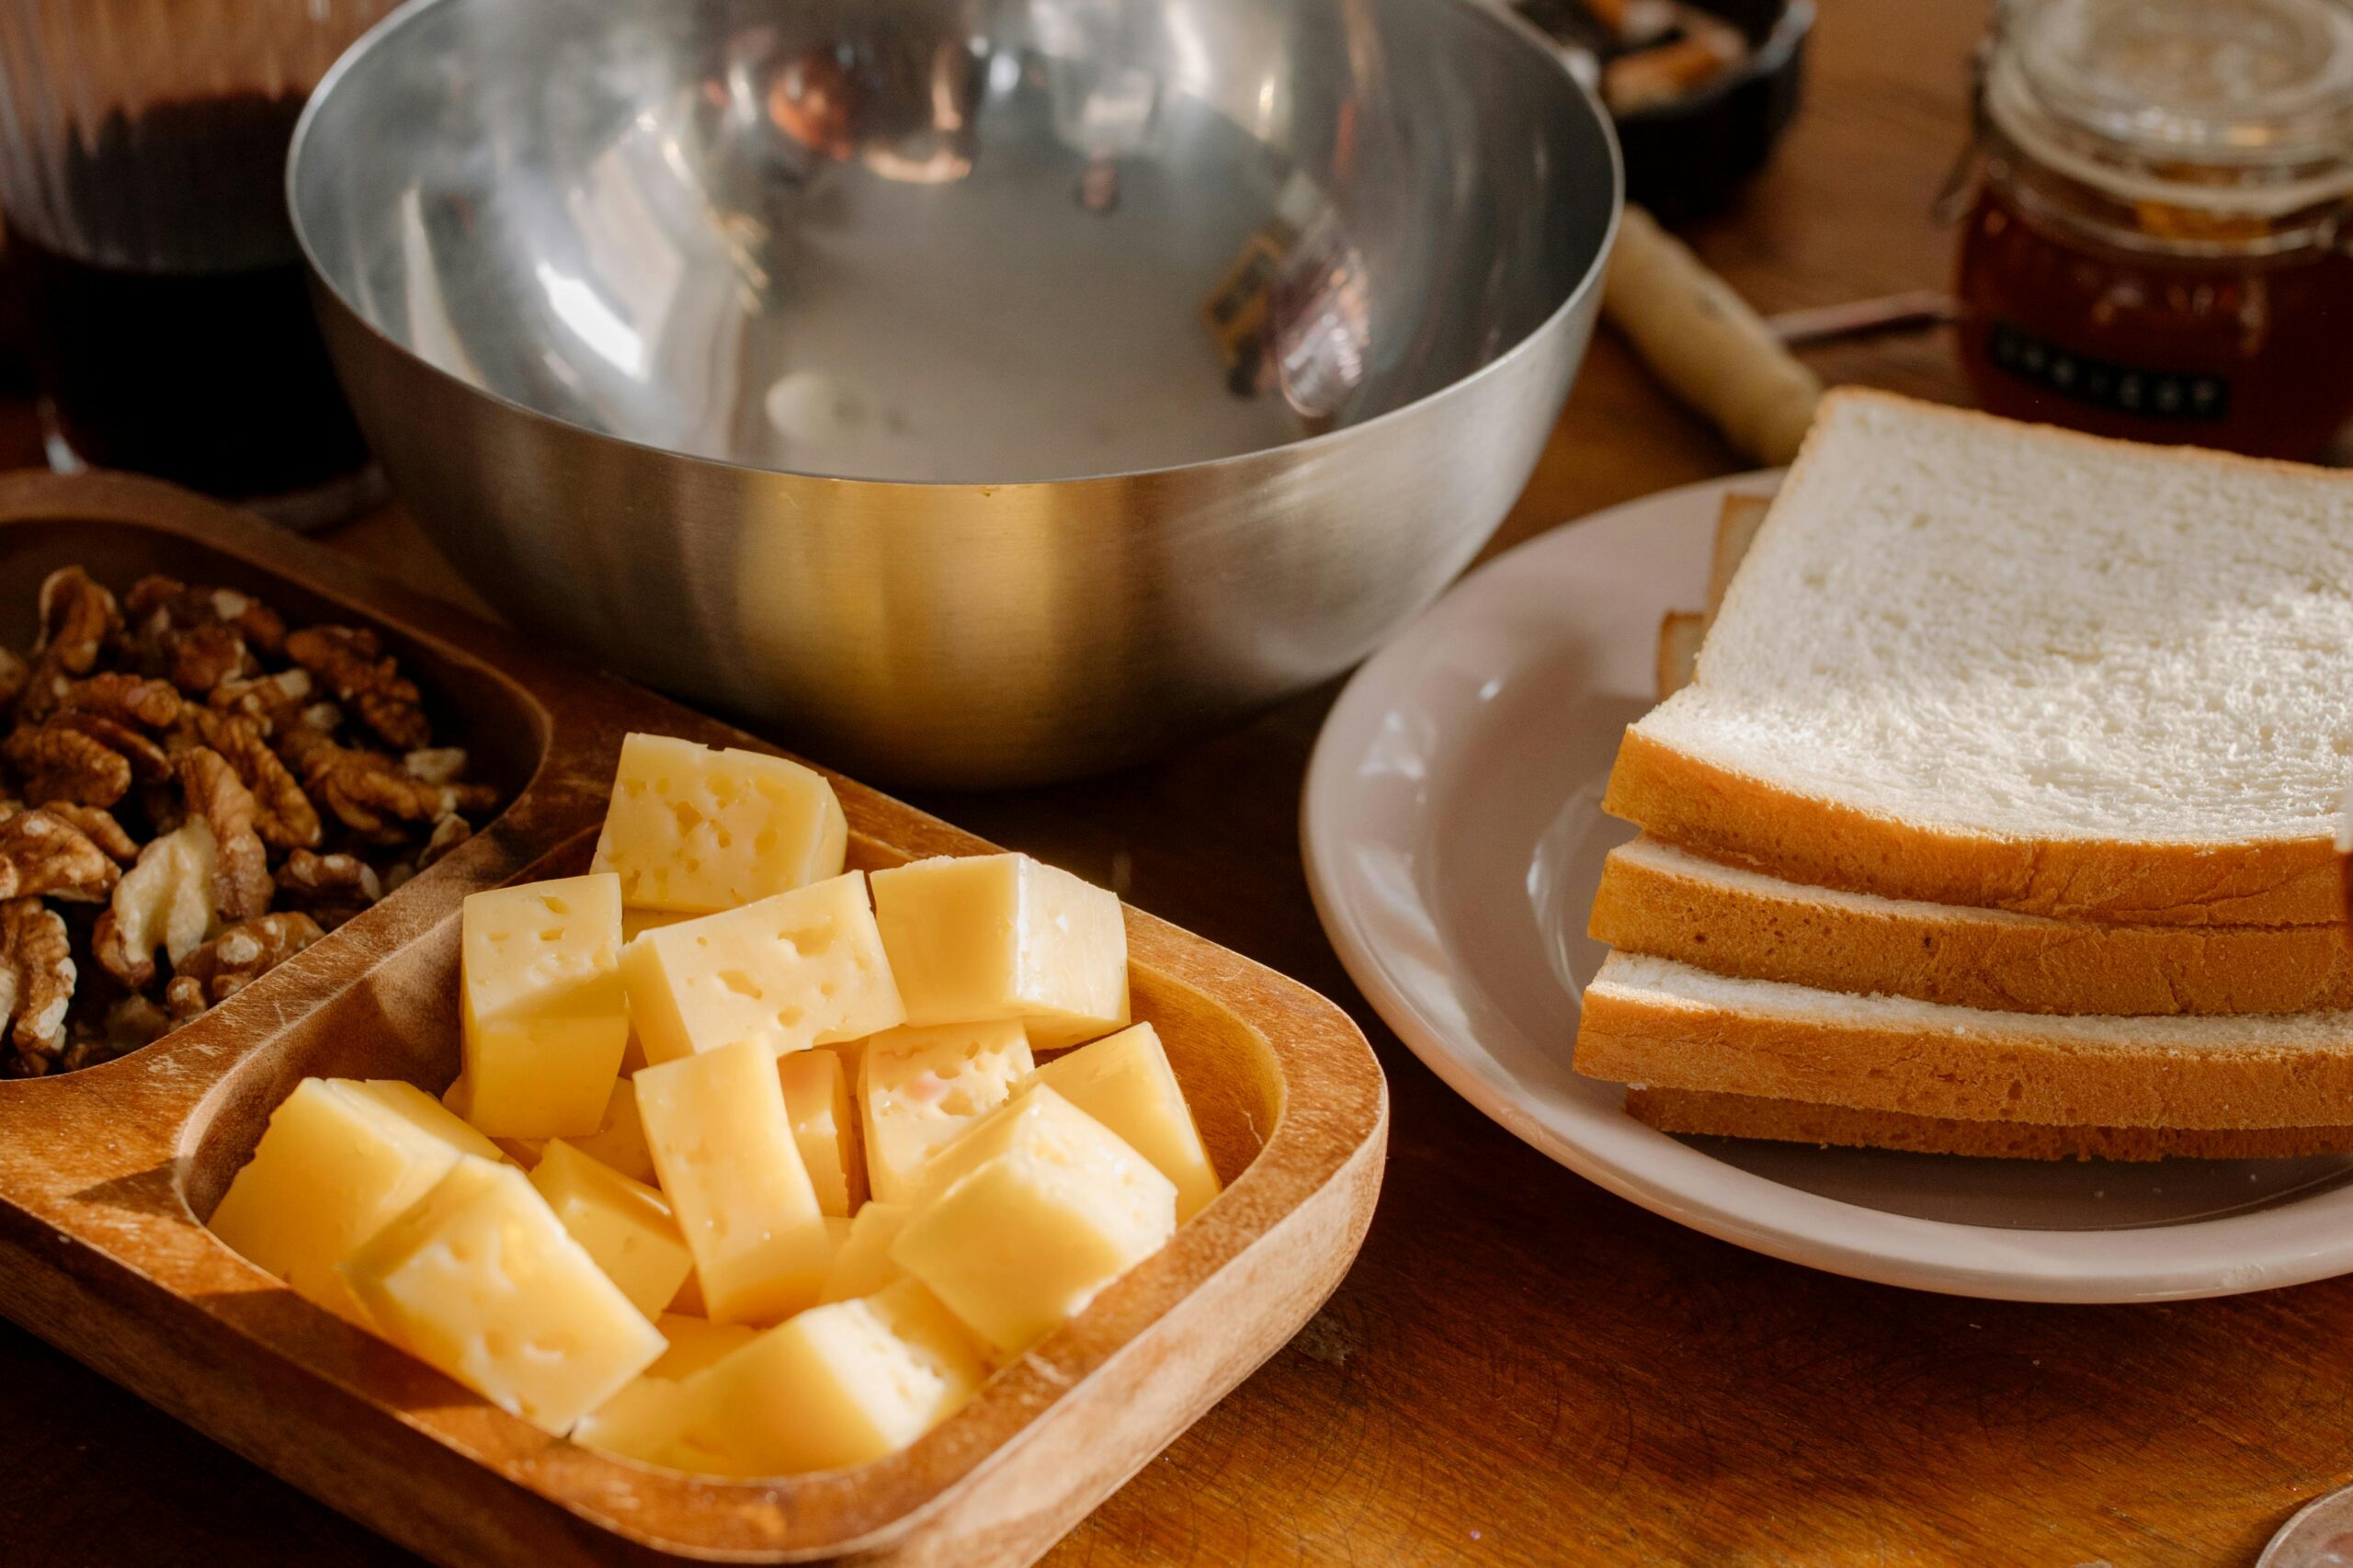 Mit welchem Messer kann man am besten Käse schneiden?